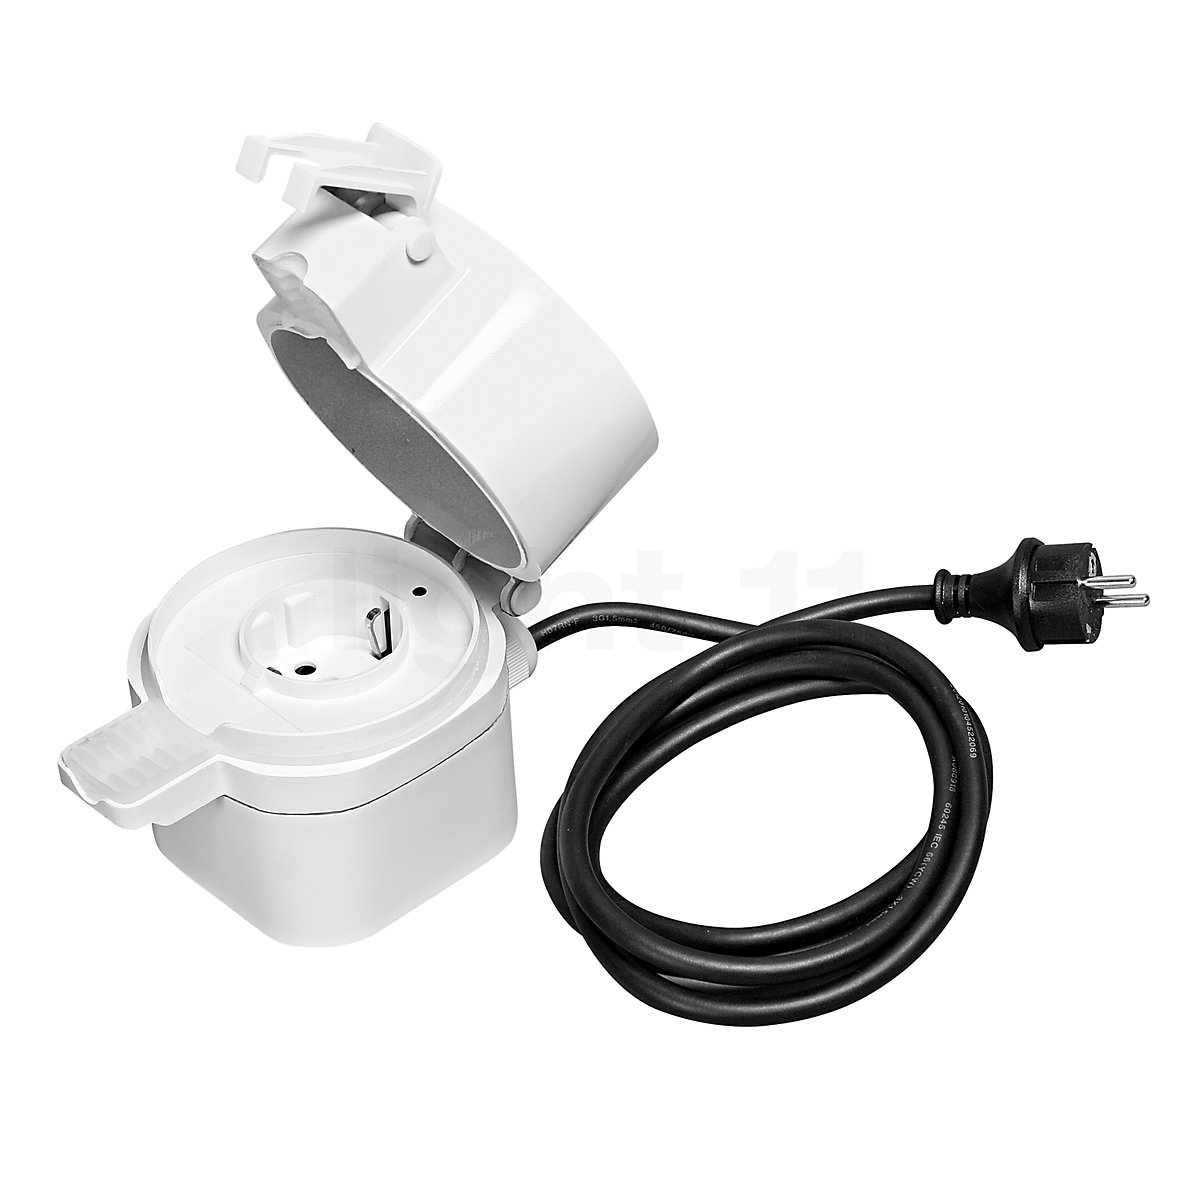 Buy Ledvance Smart Plug Outdoor socket with ZigBee at